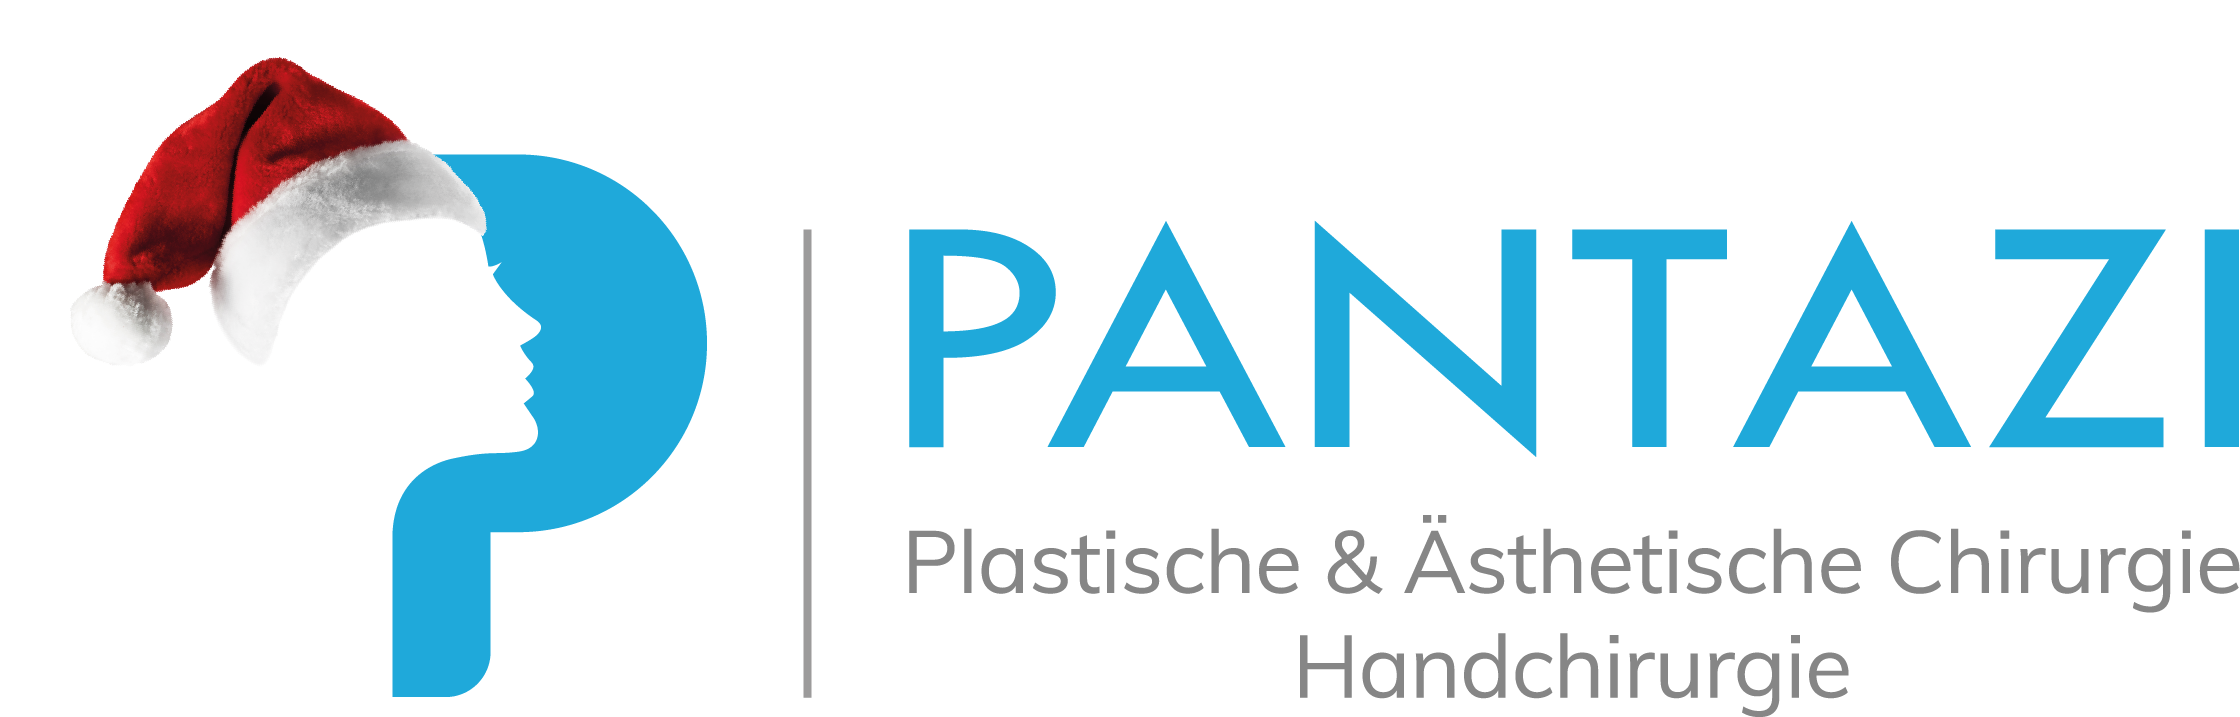 Dr. Pantazi Logo